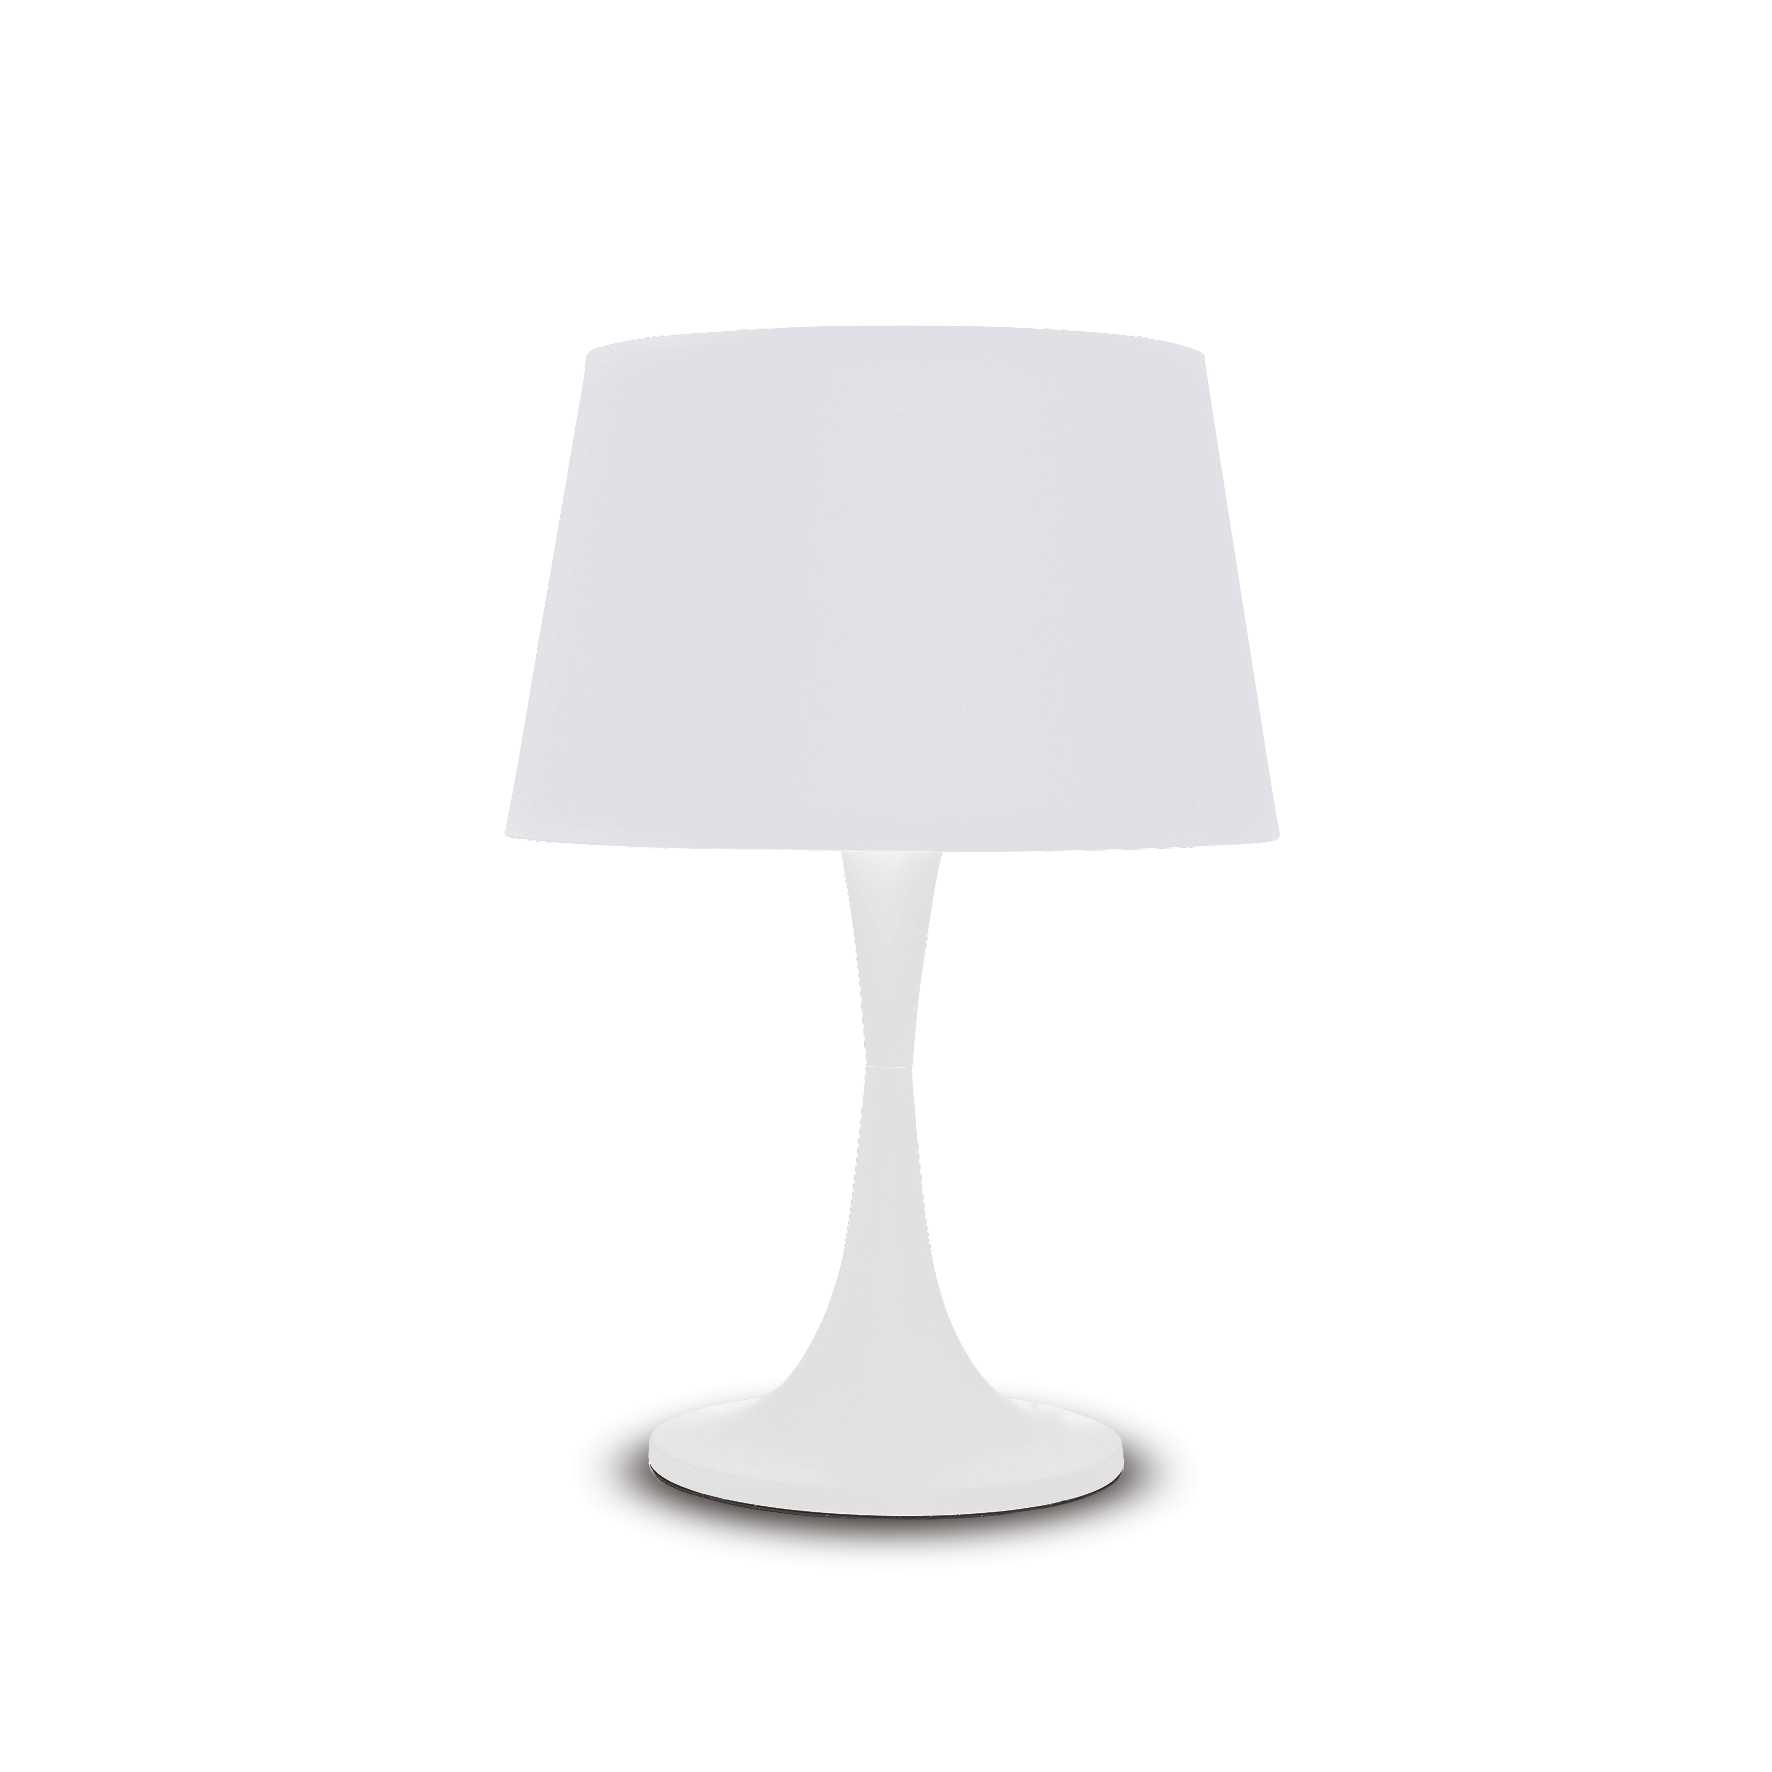 AD hotelska oprema Stolna lampa London tl1 big- Bijele boje slika proizvoda